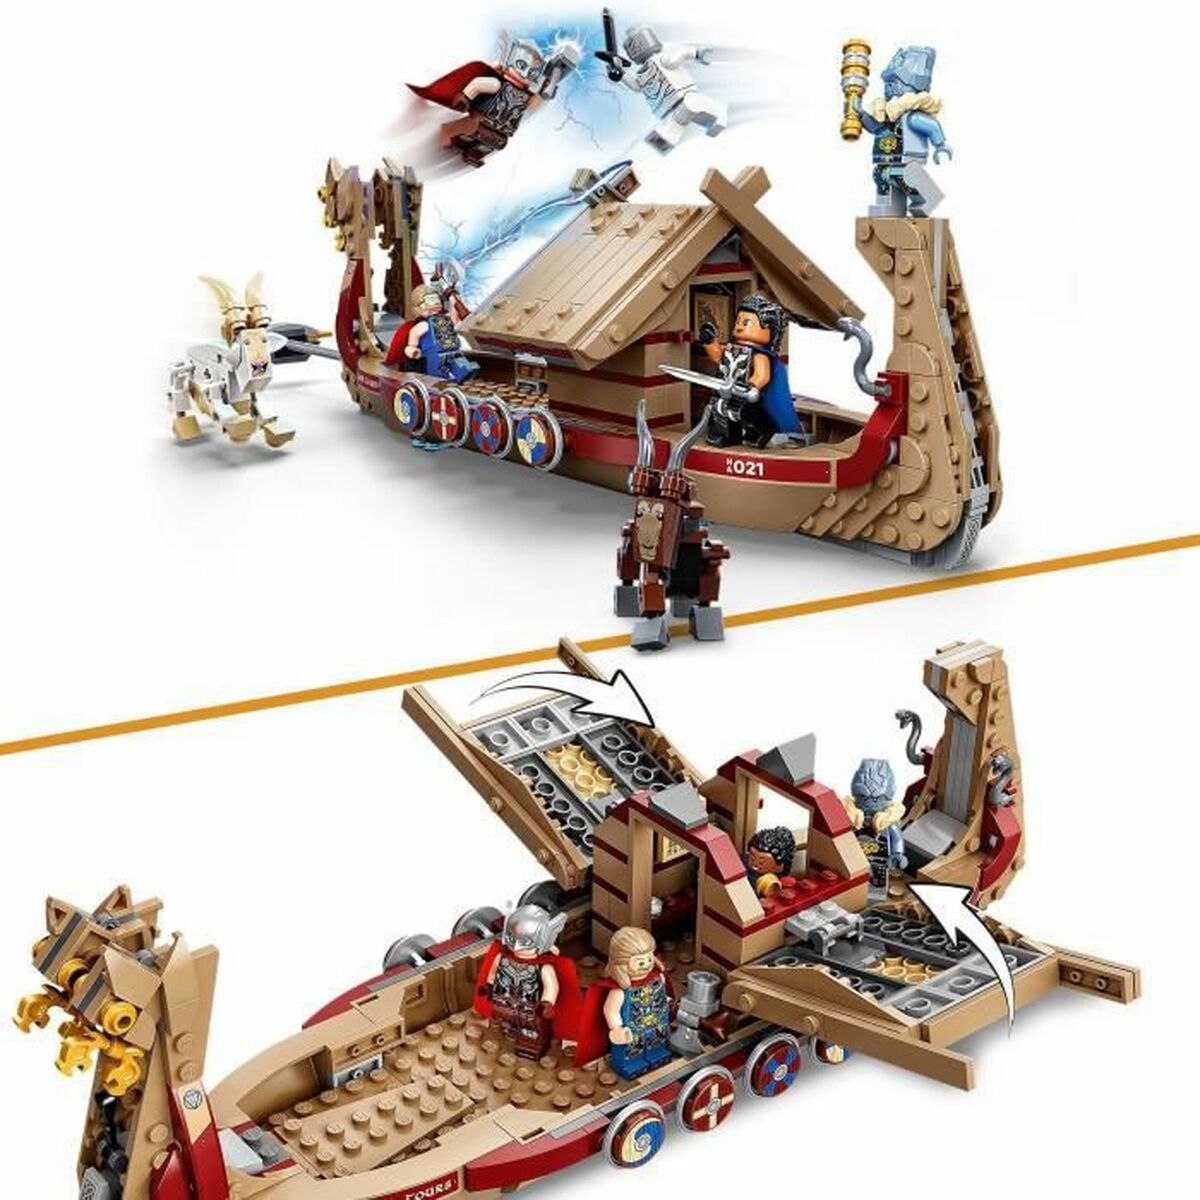 Conjunto de construção LEGO Thor Love and Thunder: The Goat Boat